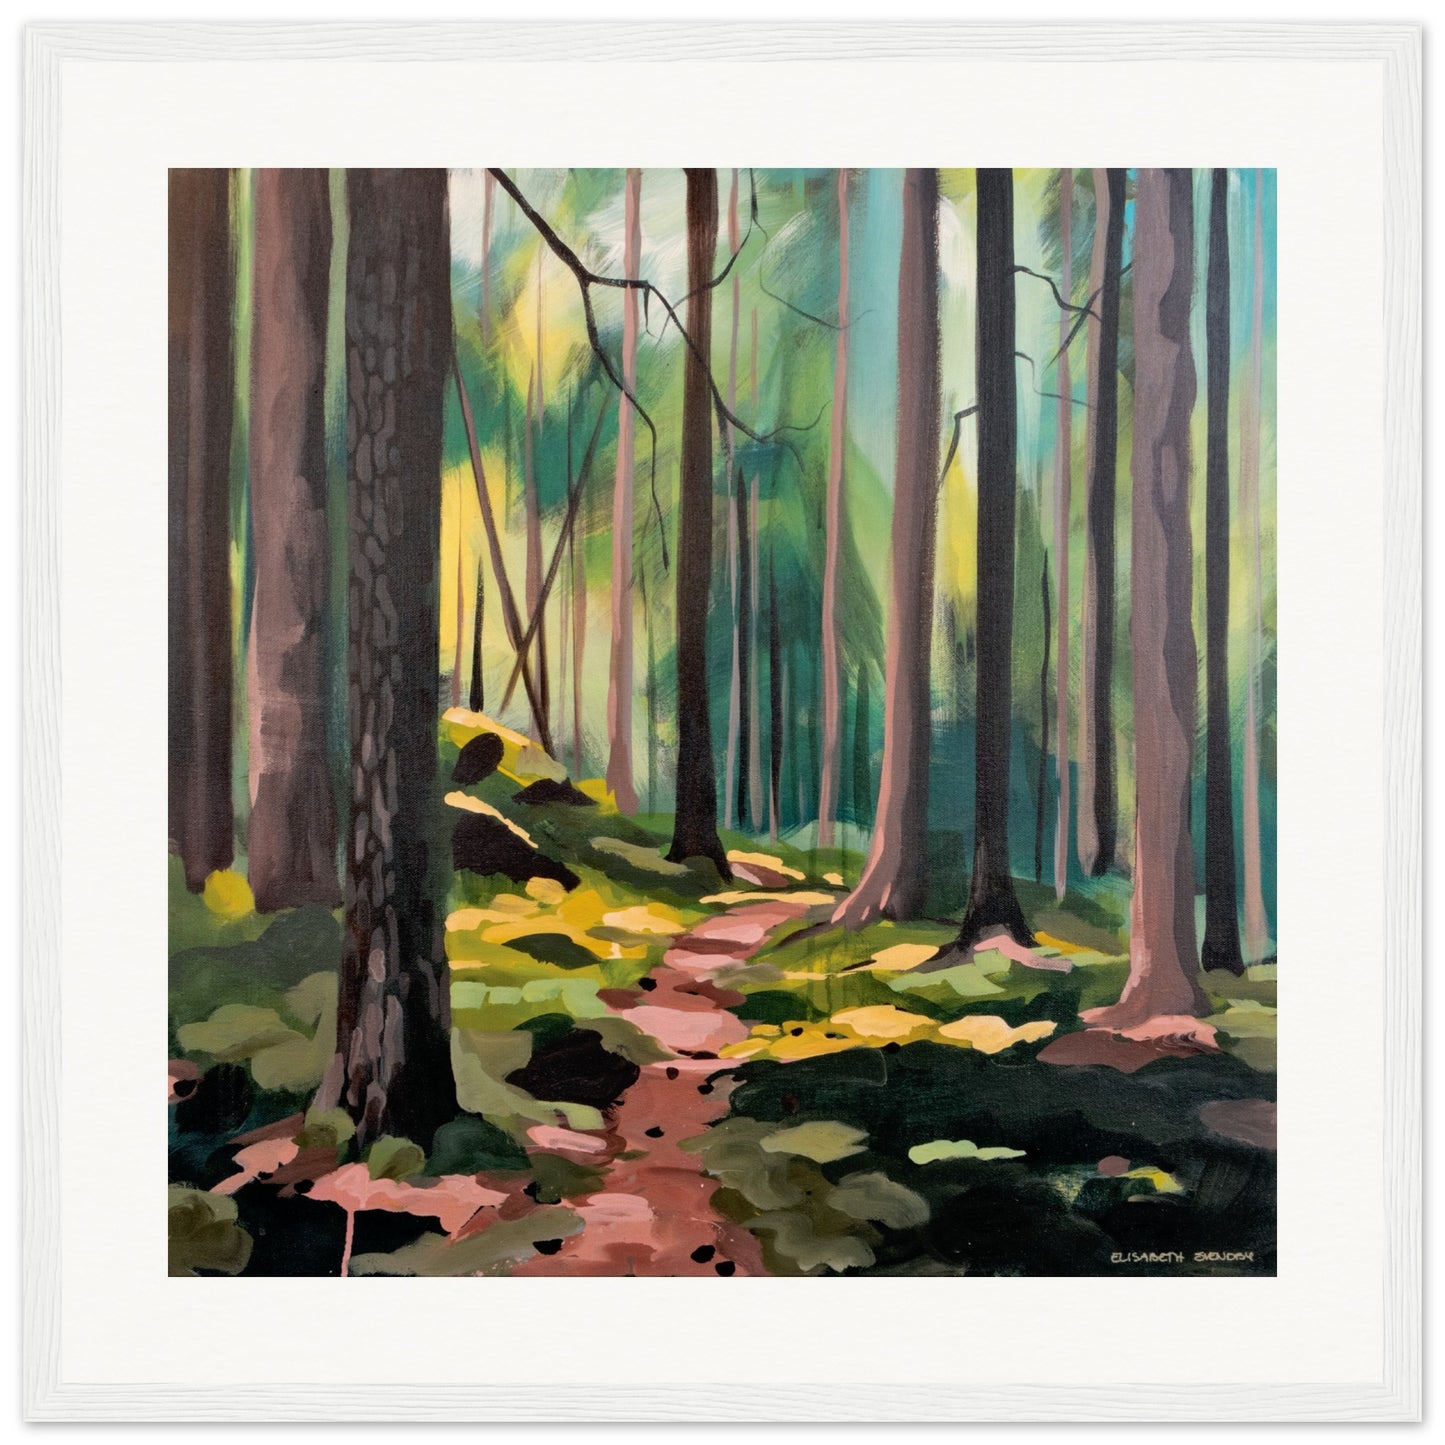 The Deep Forest -  Fine Art Print